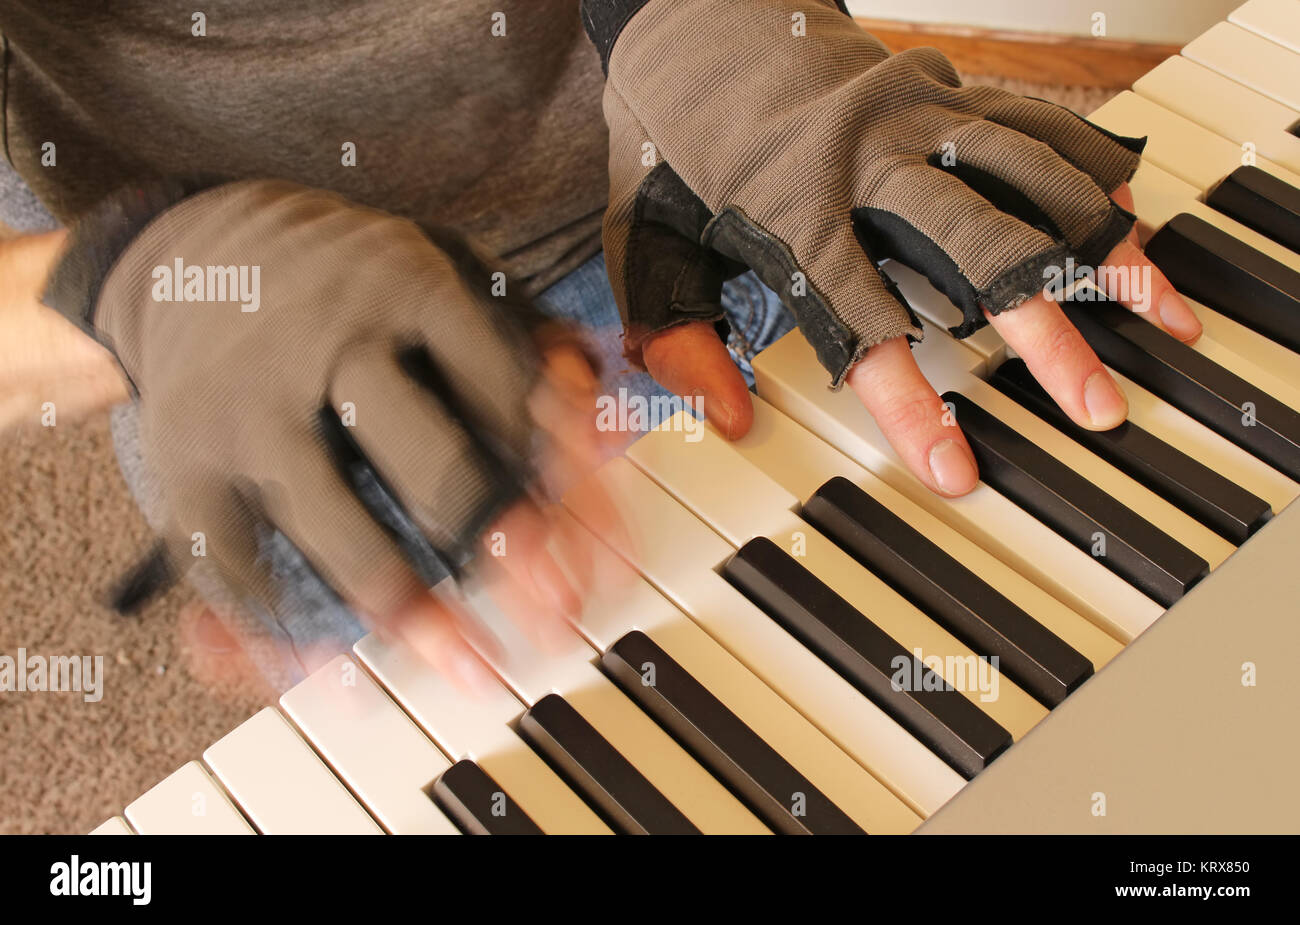 Un pianiste se bat le froid de l'hiver en jouant avec des gants sans doigts. Une main touche une corde sensible, tandis que l'autre joue rapidement. Banque D'Images